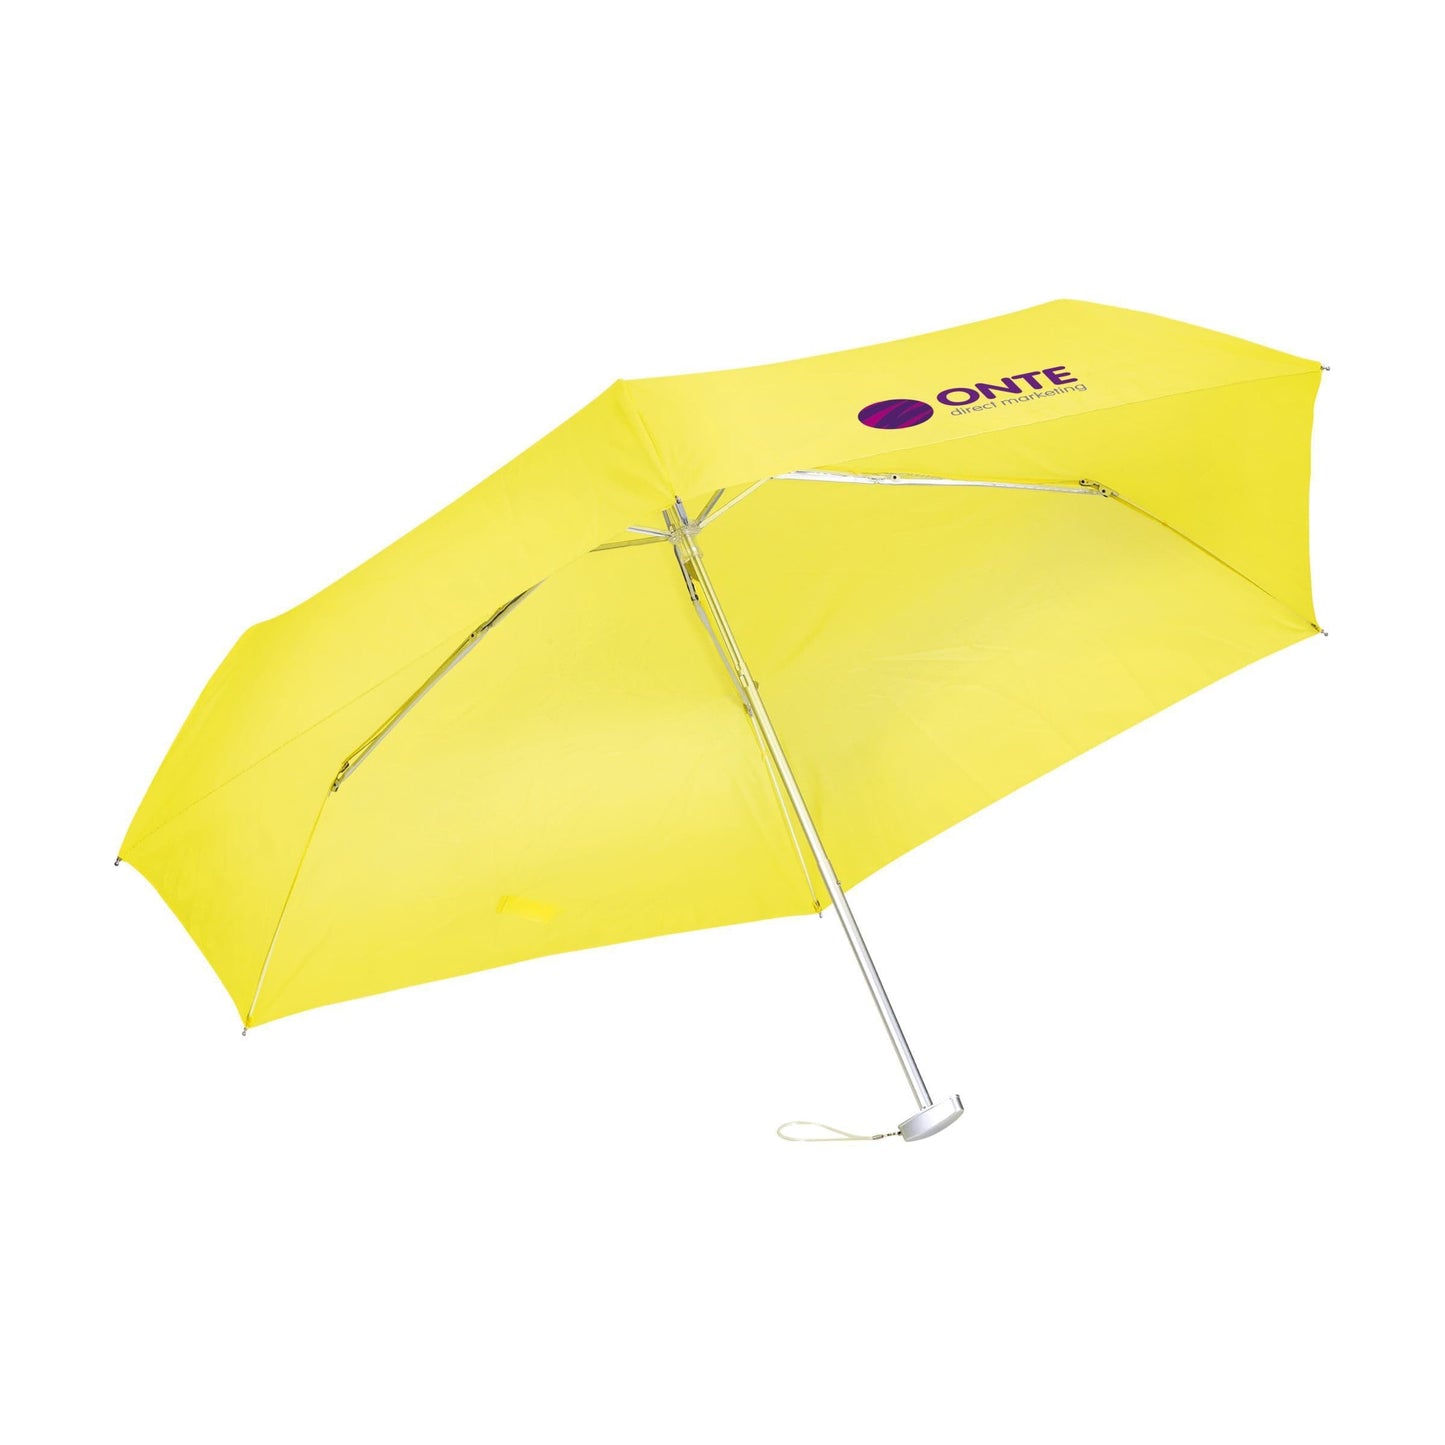 Ultra faltbarer Regenschirm - WERBE-WELT.SHOP